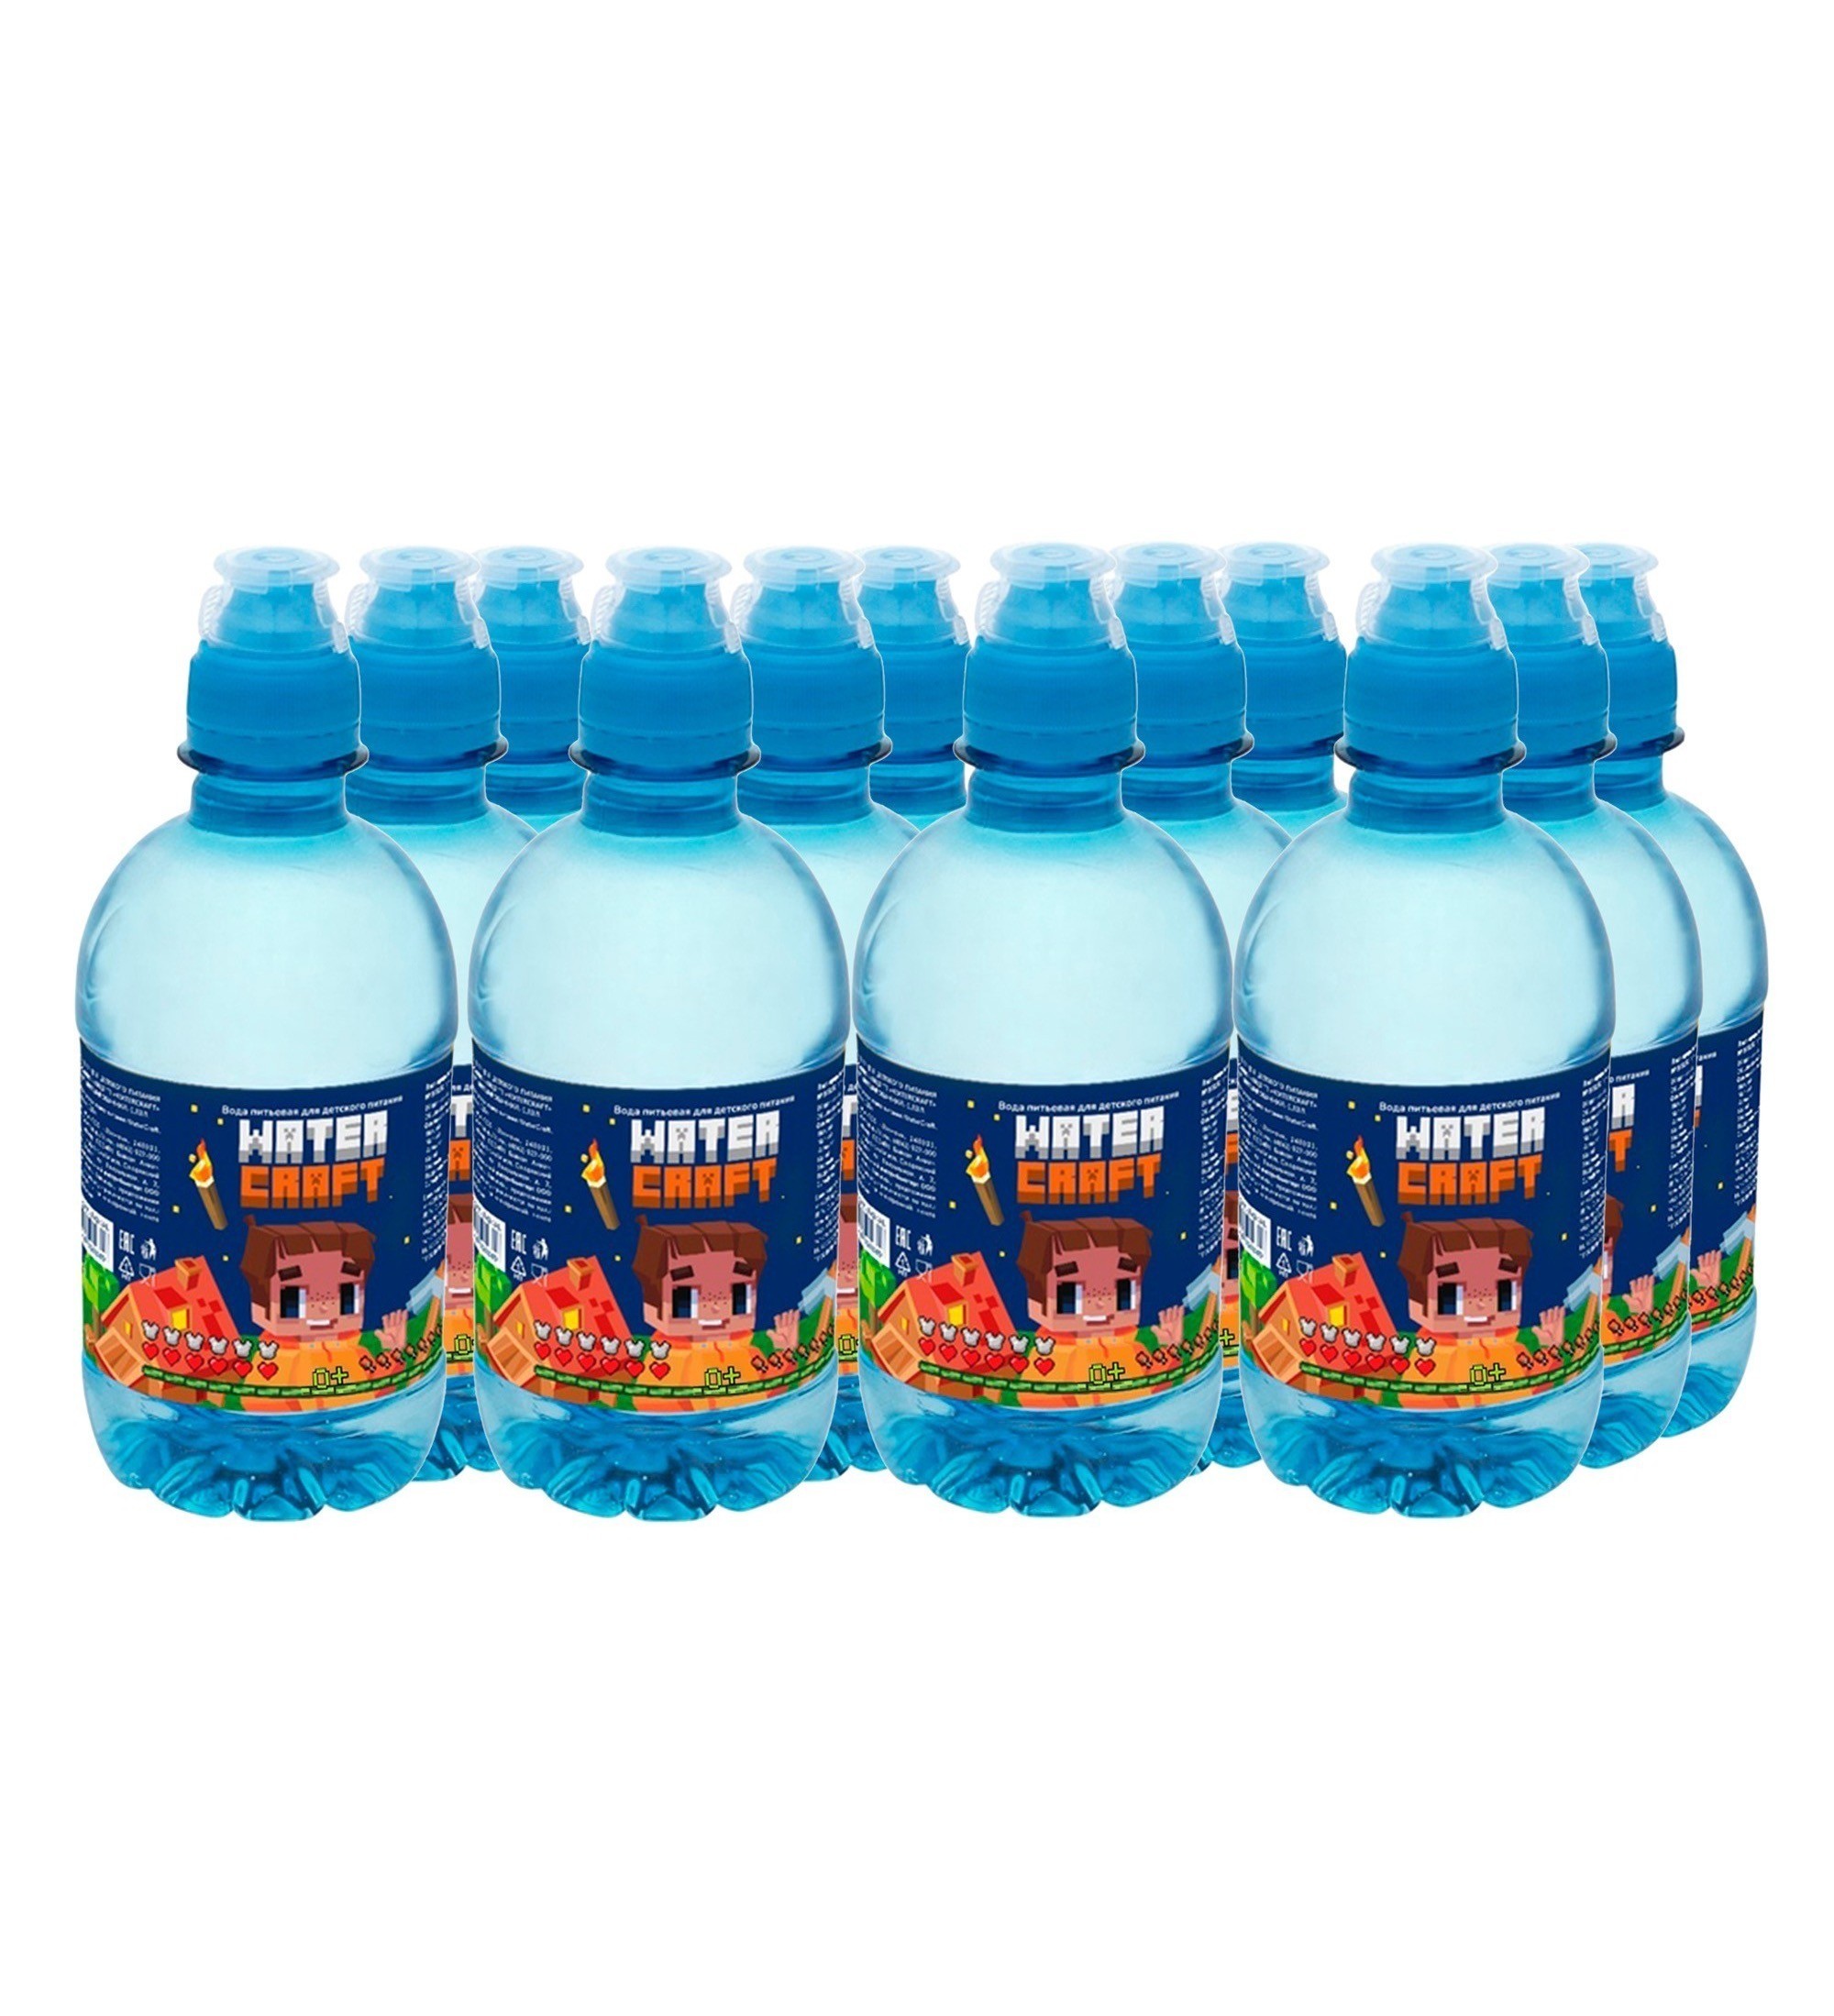 Вода питьевая WATERCRAFT, для детей от 0 лет негазированная, 0,33 л пластик (упаковка 12 шт)